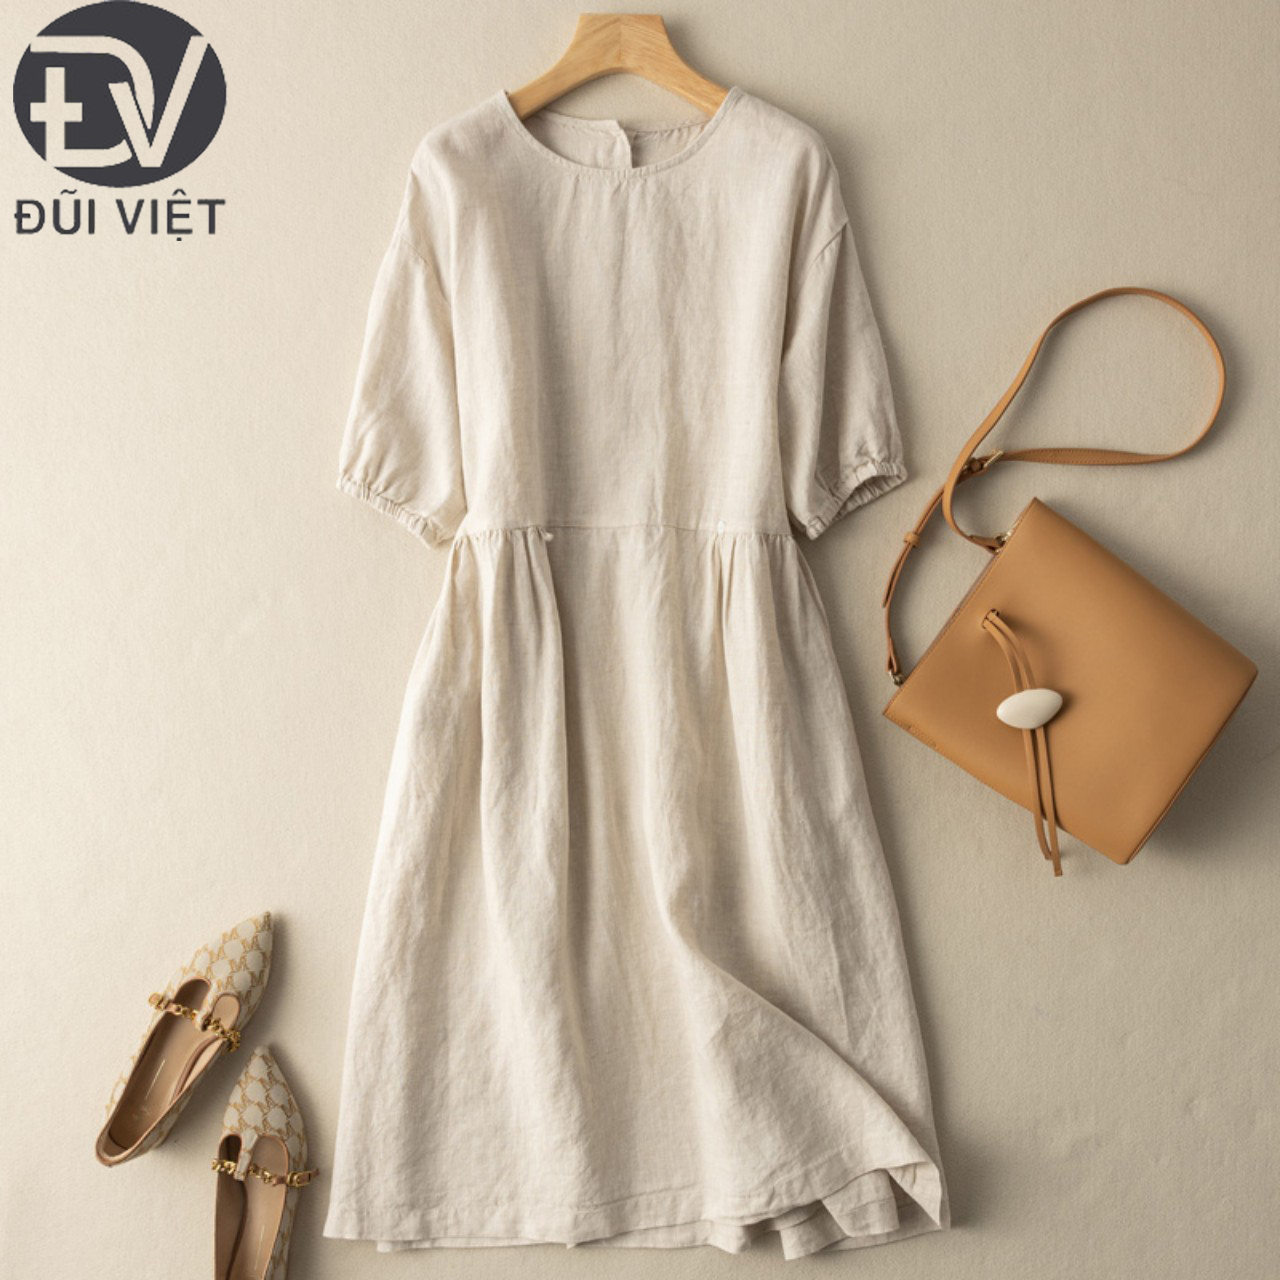 Hình ảnh Đầm linen dáng suông Trơn Thời Trang Thanh Lịch Phong Cách Hàn Quốc - Đũi Việt DV188